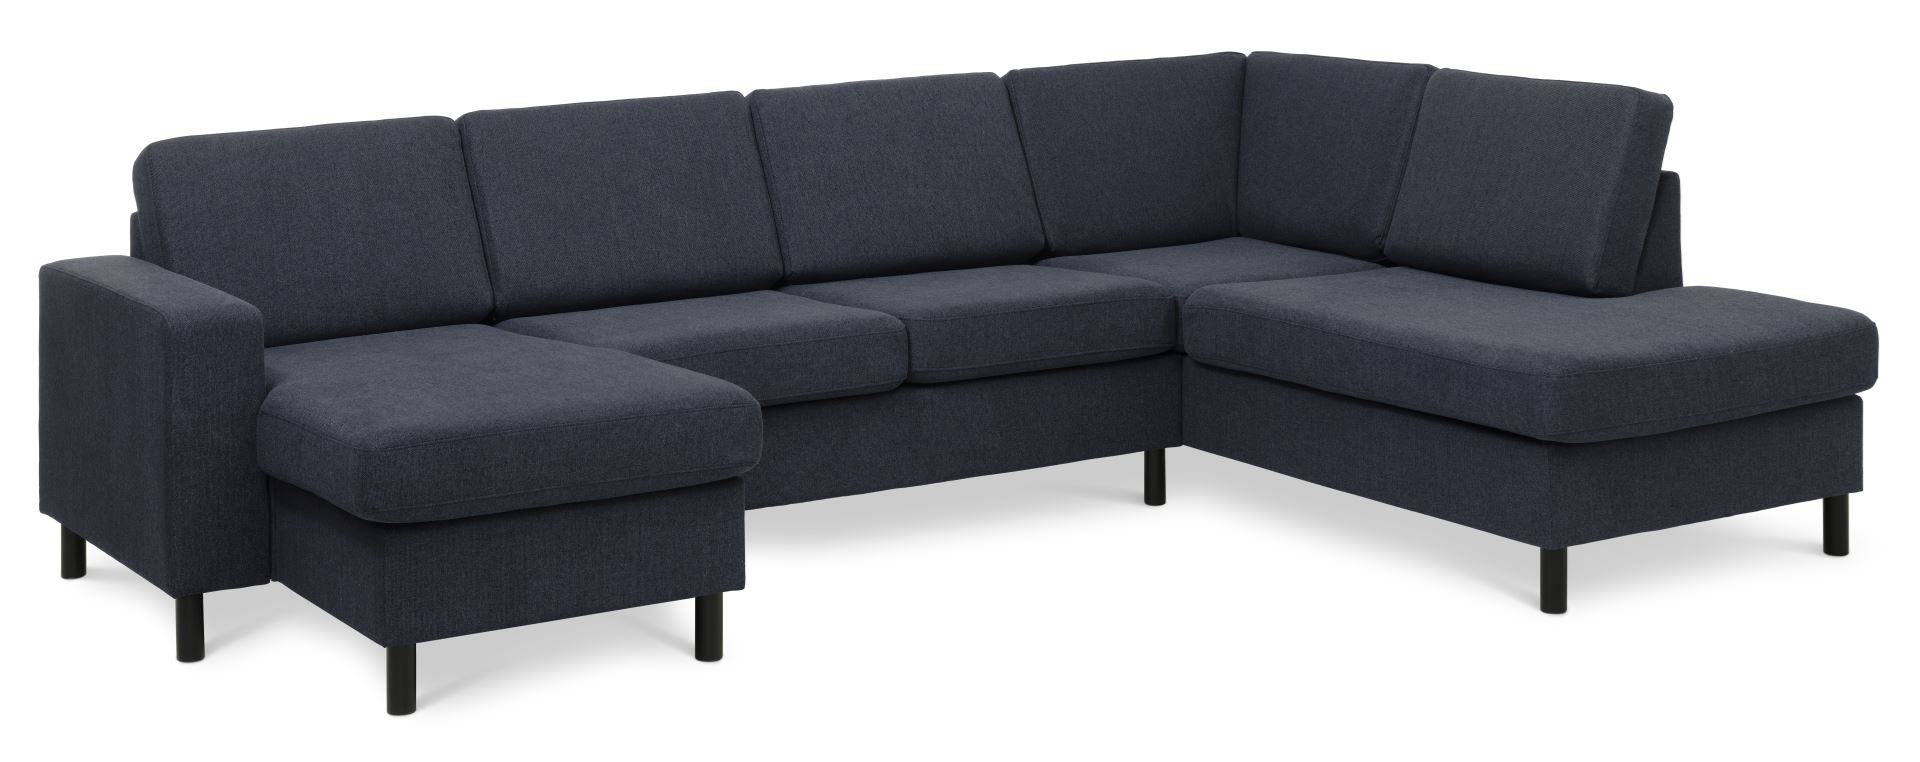 Pan set 5 U OE right sofa med chaiselong - blå polyester stof og sort træ